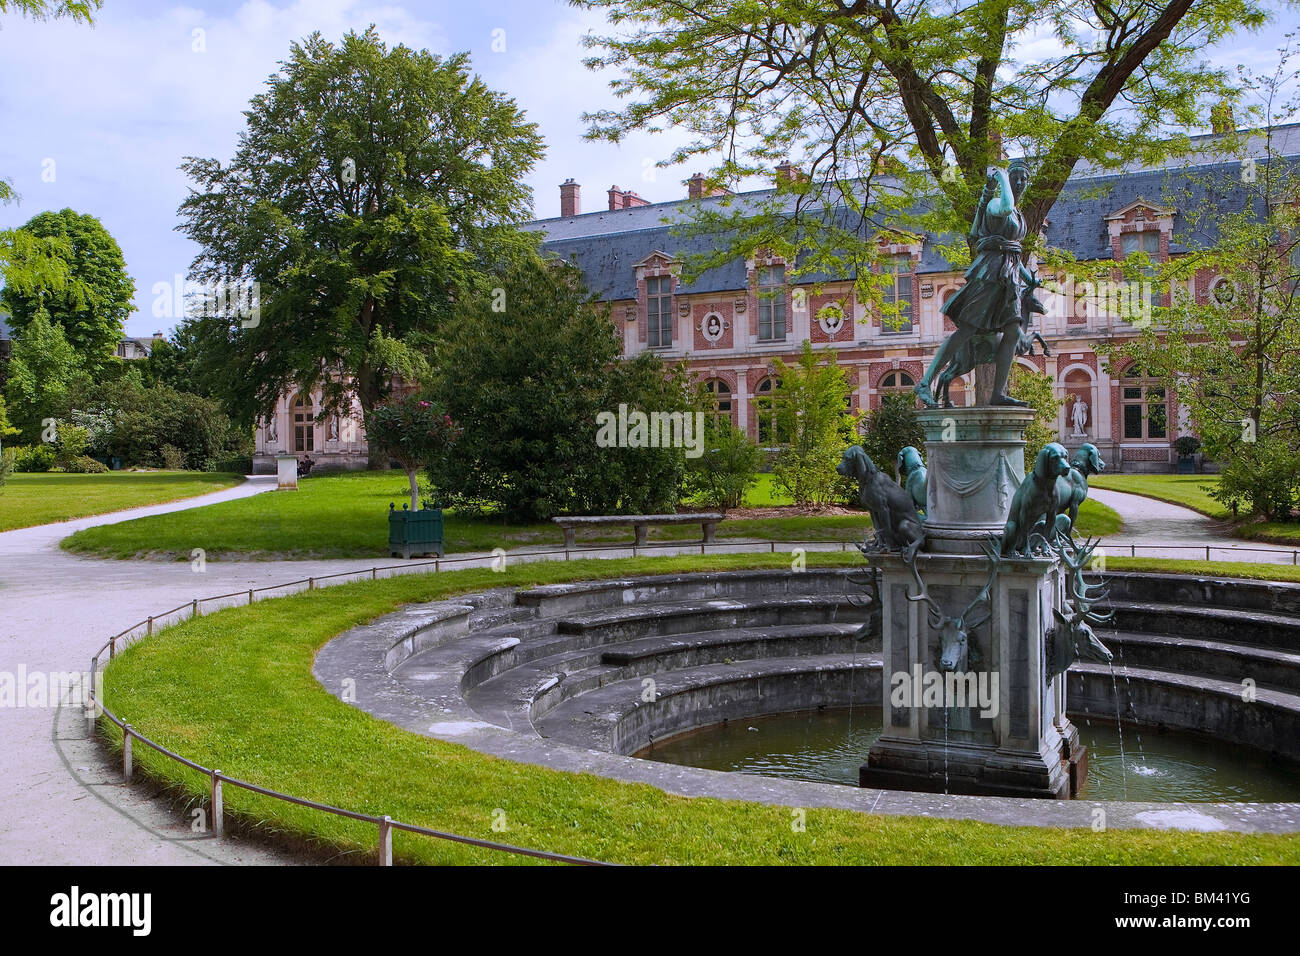 Diana's gardens, Château de Fontainebleau, Paris, France, Europe Banque D'Images